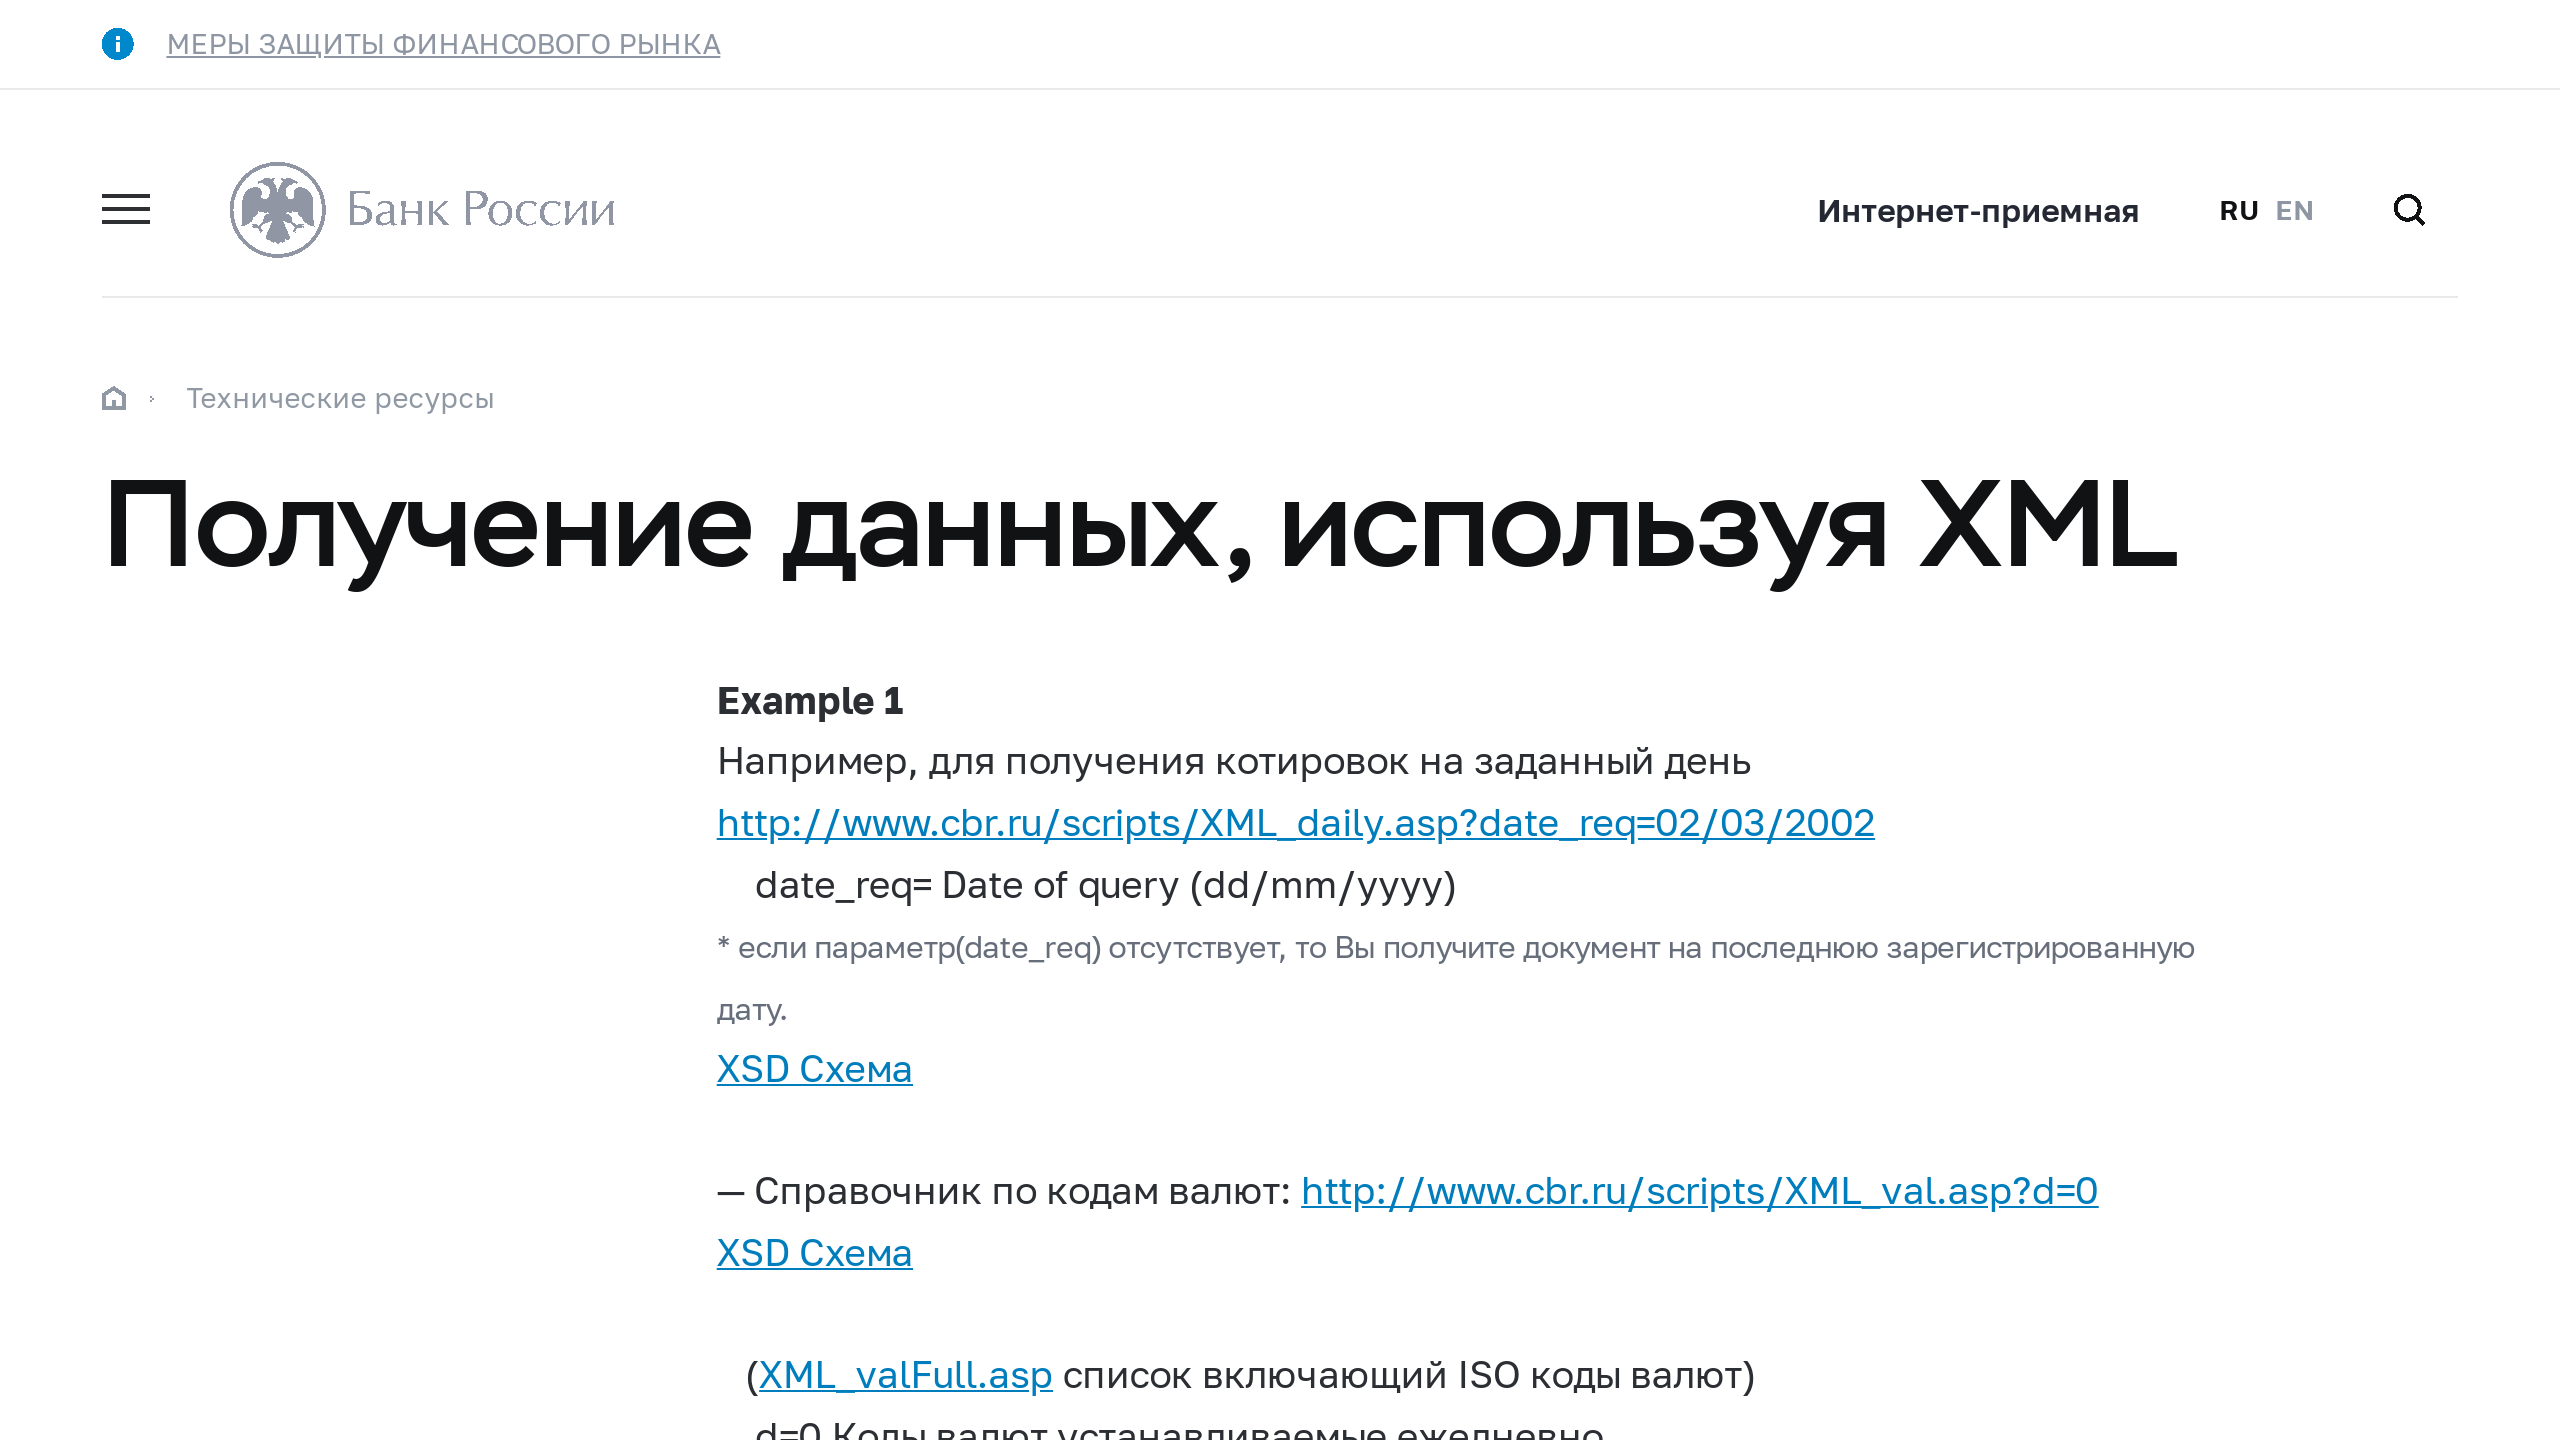 Bank of Russia's website screenshot